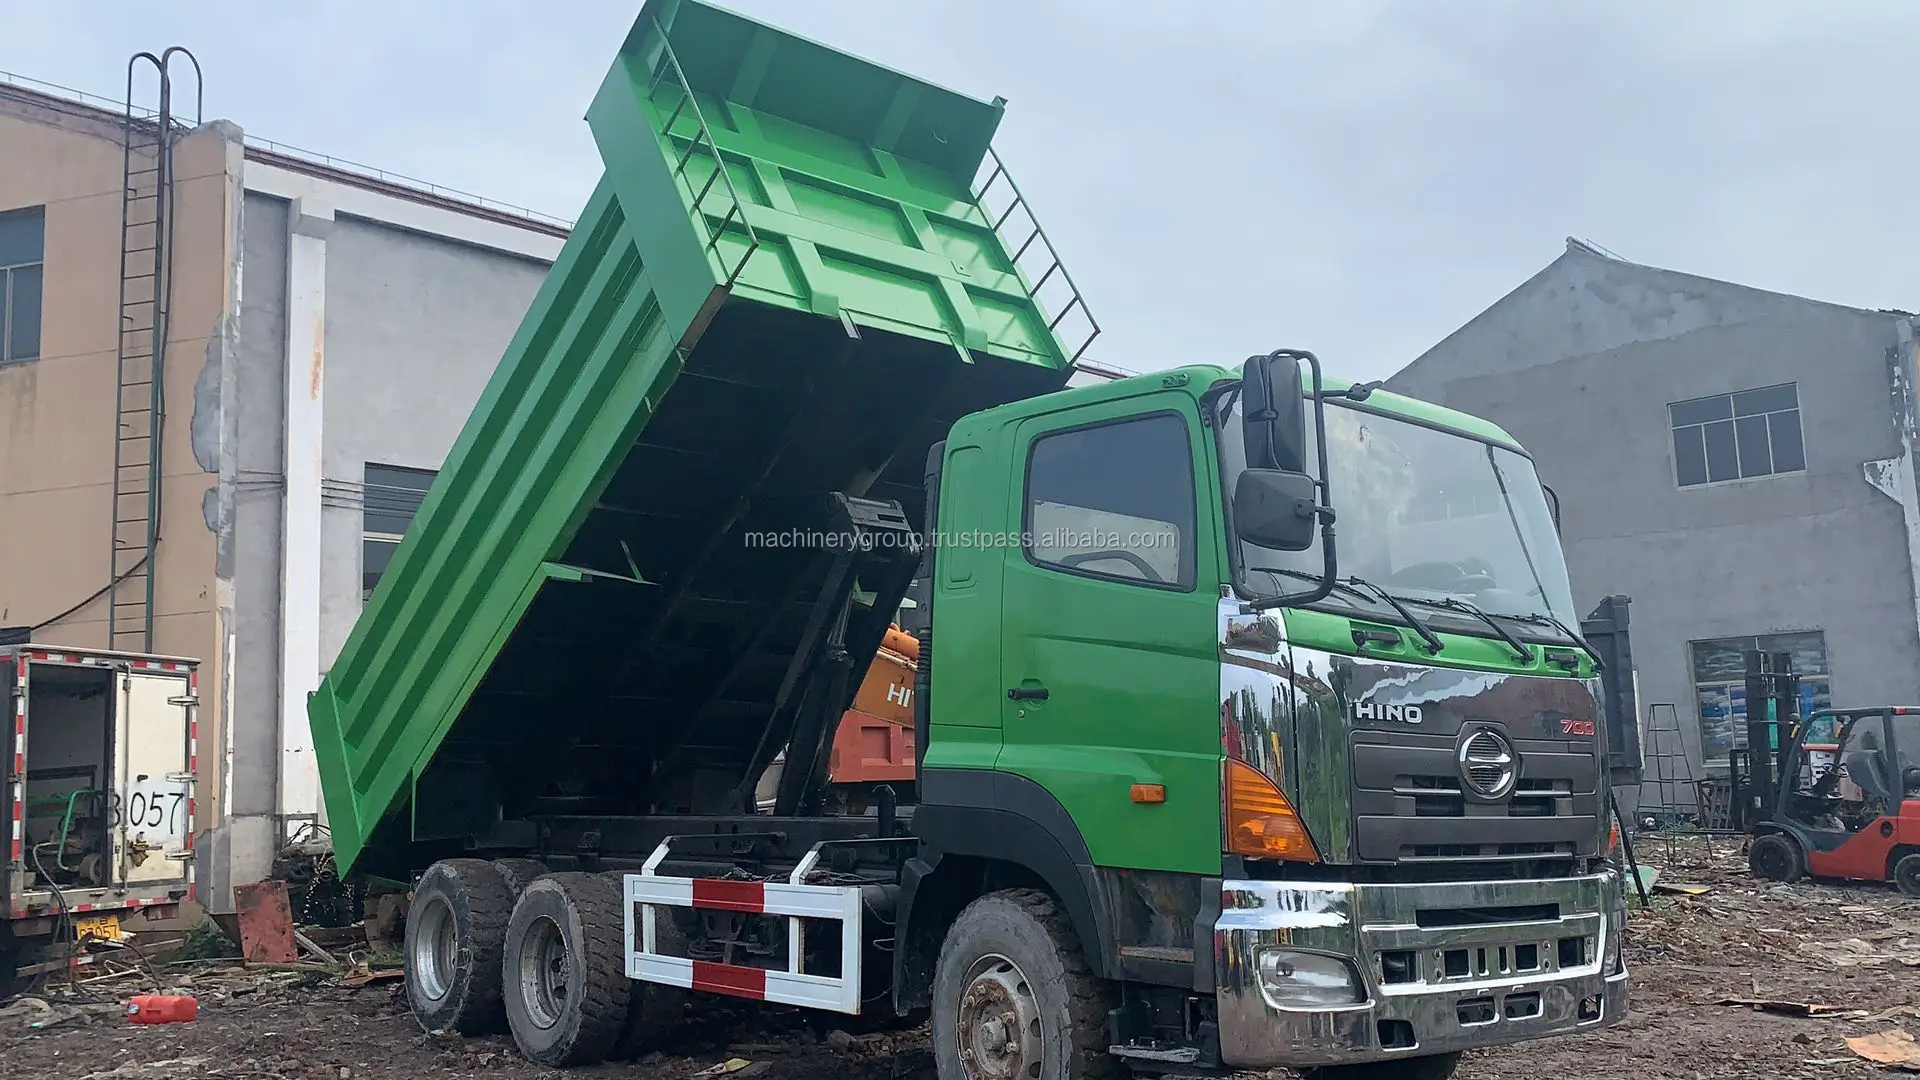 Truk Tipper Dump Truck Pekerjaan Berat 64 350hp Jepang Buy Japan Hino 64 350hp Heavy Duty Dump Truck Tipper Truck